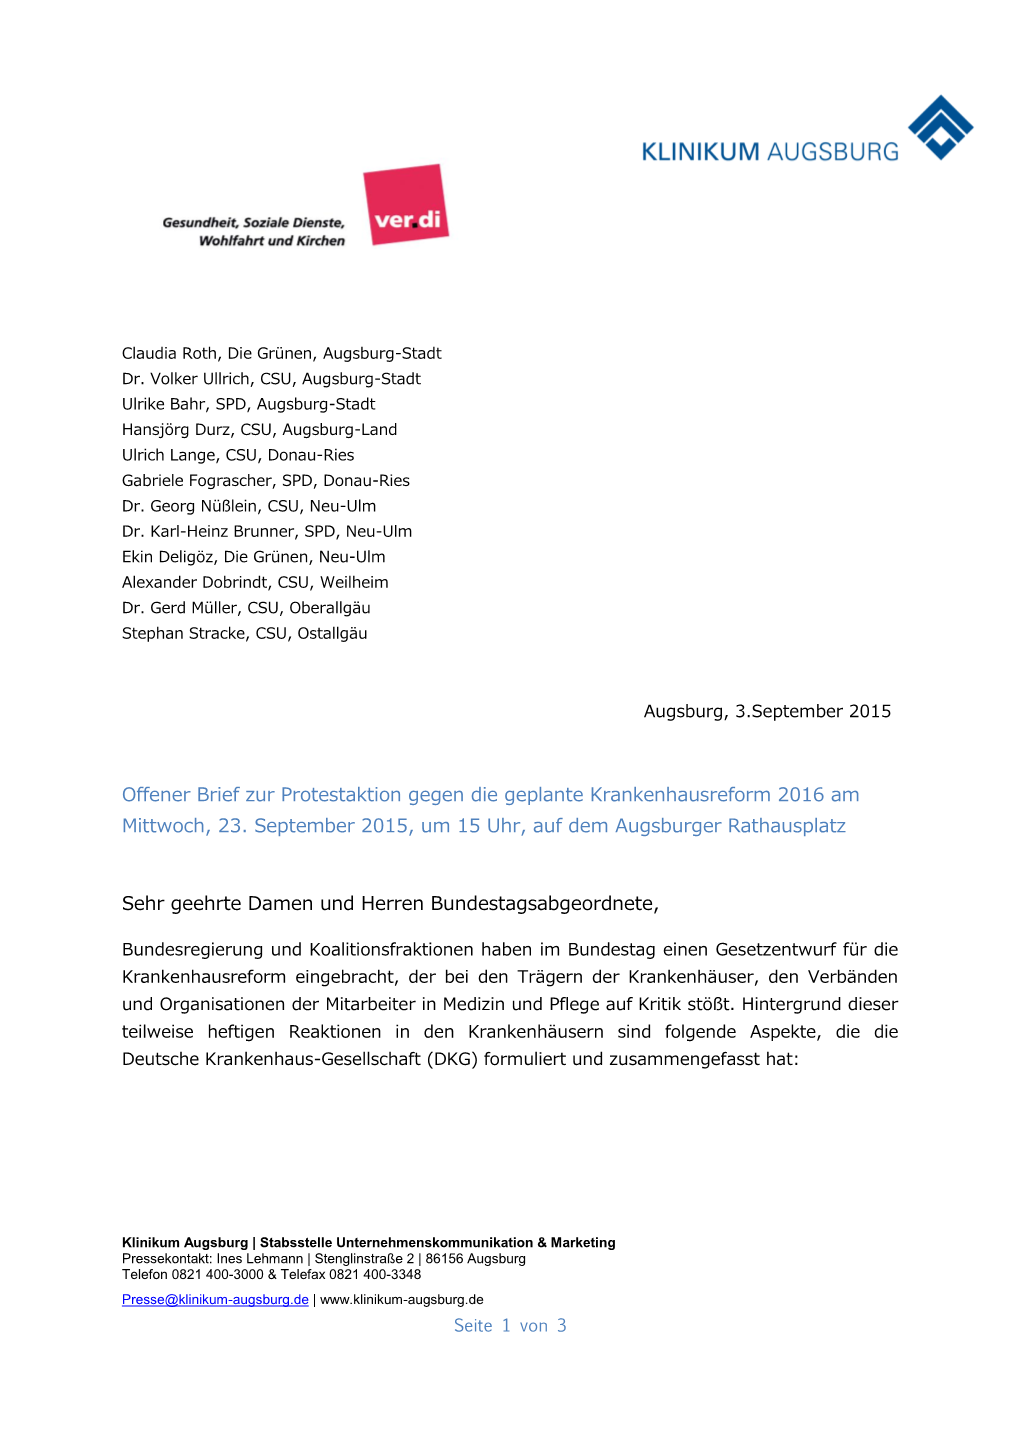 Offener Brief Zur Protestaktion Gegen Die Geplante Krankenhausreform 2016 Am Mittwoch, 23